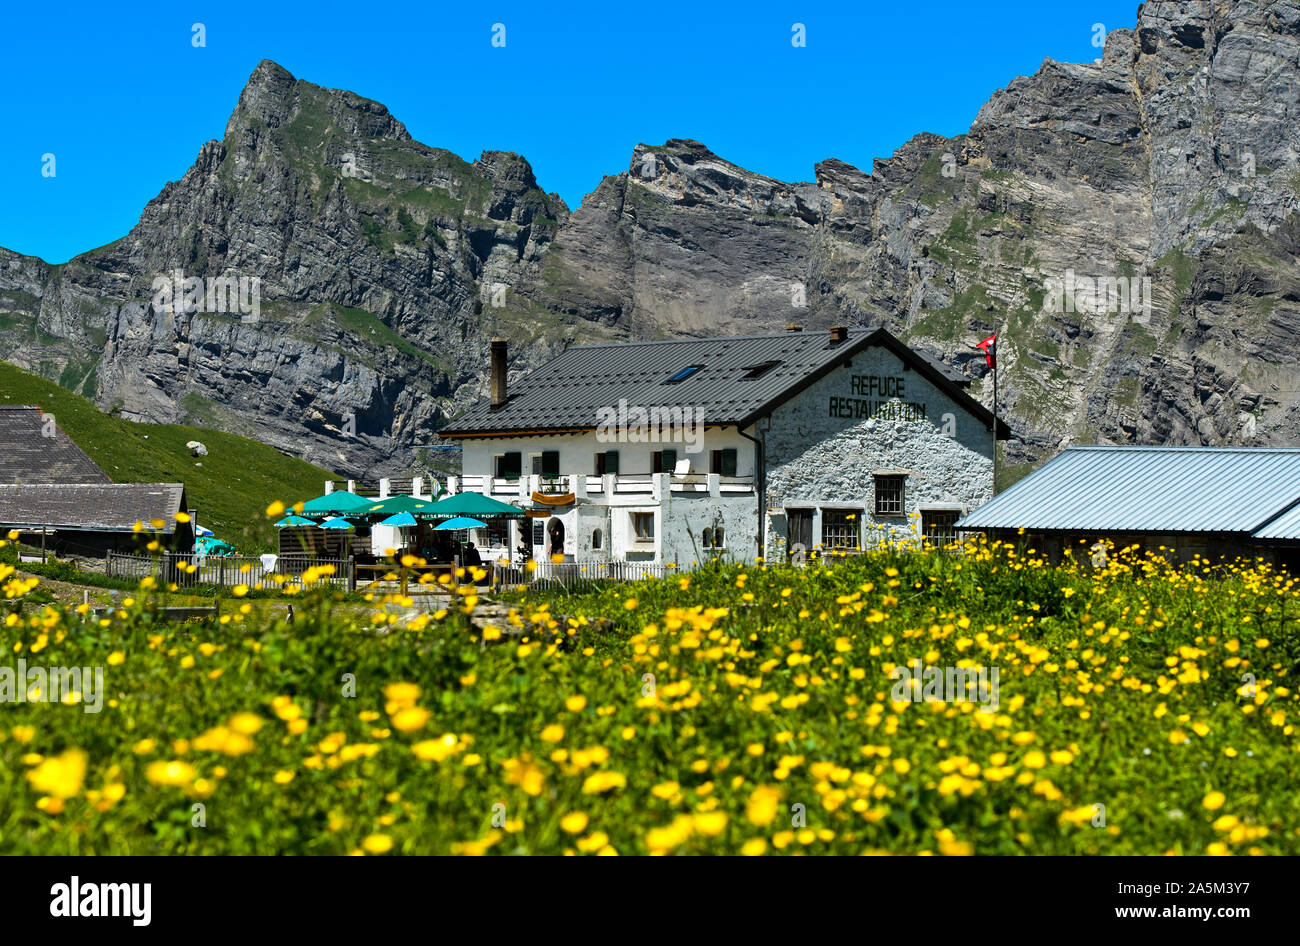 Auberge de montagne Refuge de la Tour d'Anzeindaz Anzeindaz Alp, au pied du massif des Diablerets, Bex, Vaud, Suisse Banque D'Images